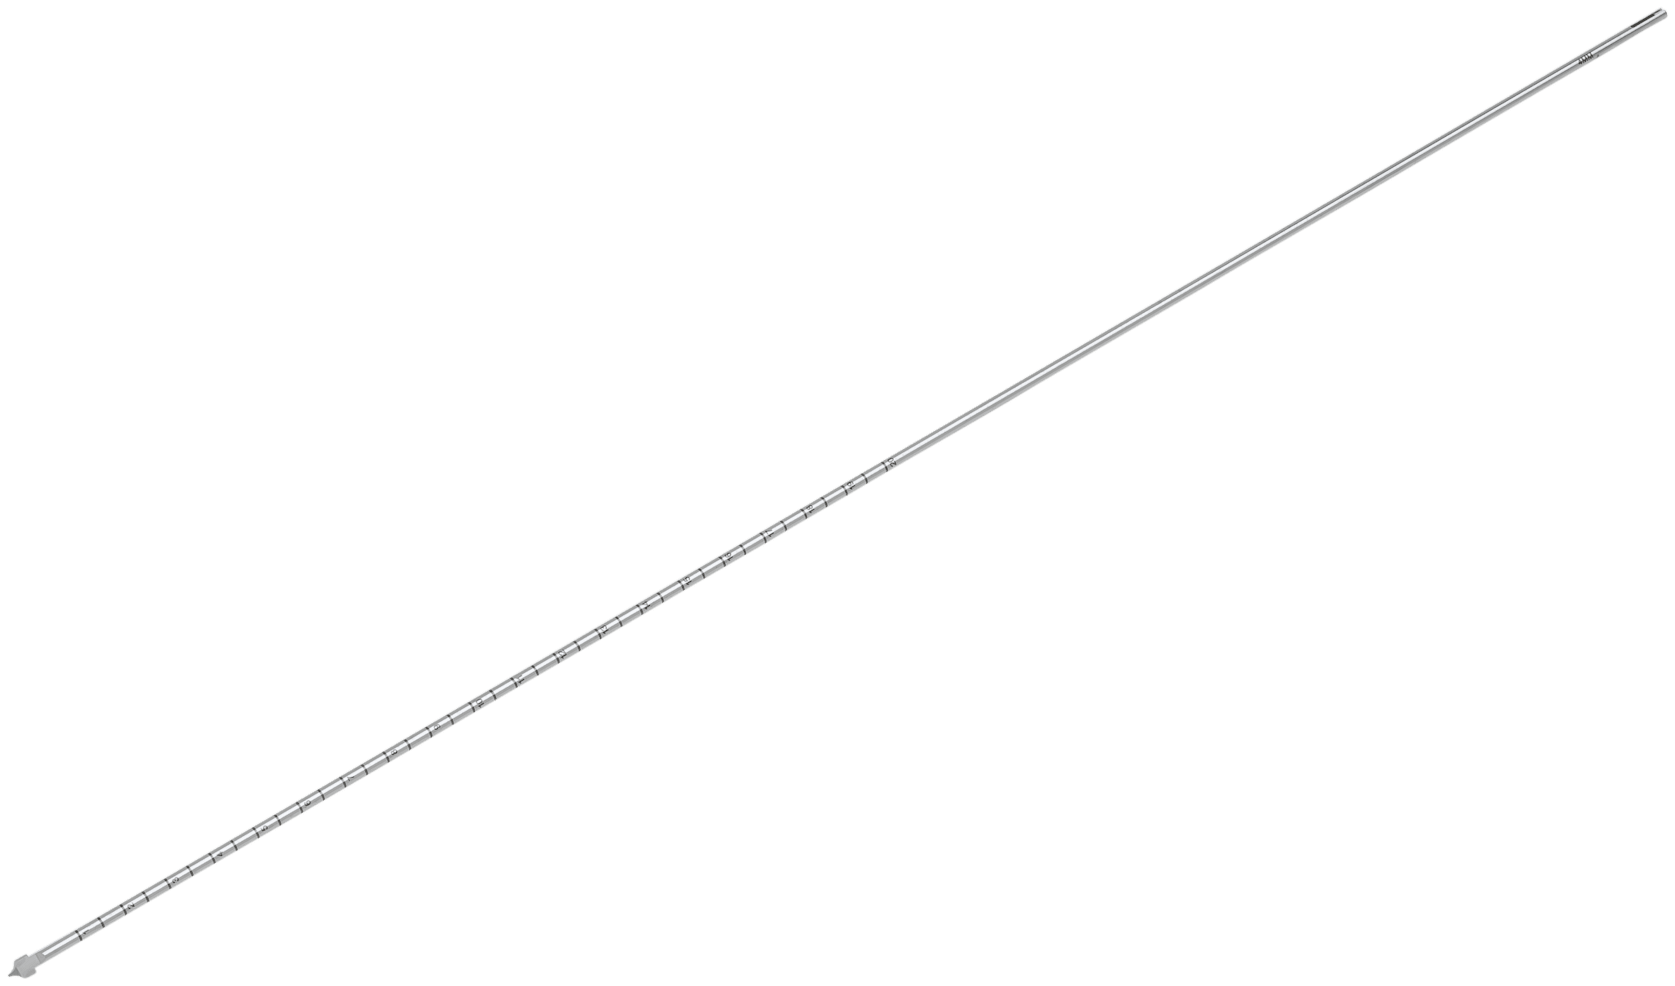 Zieldraht für ACL TightRope, 4 mm m. geschlossener Fadenöse